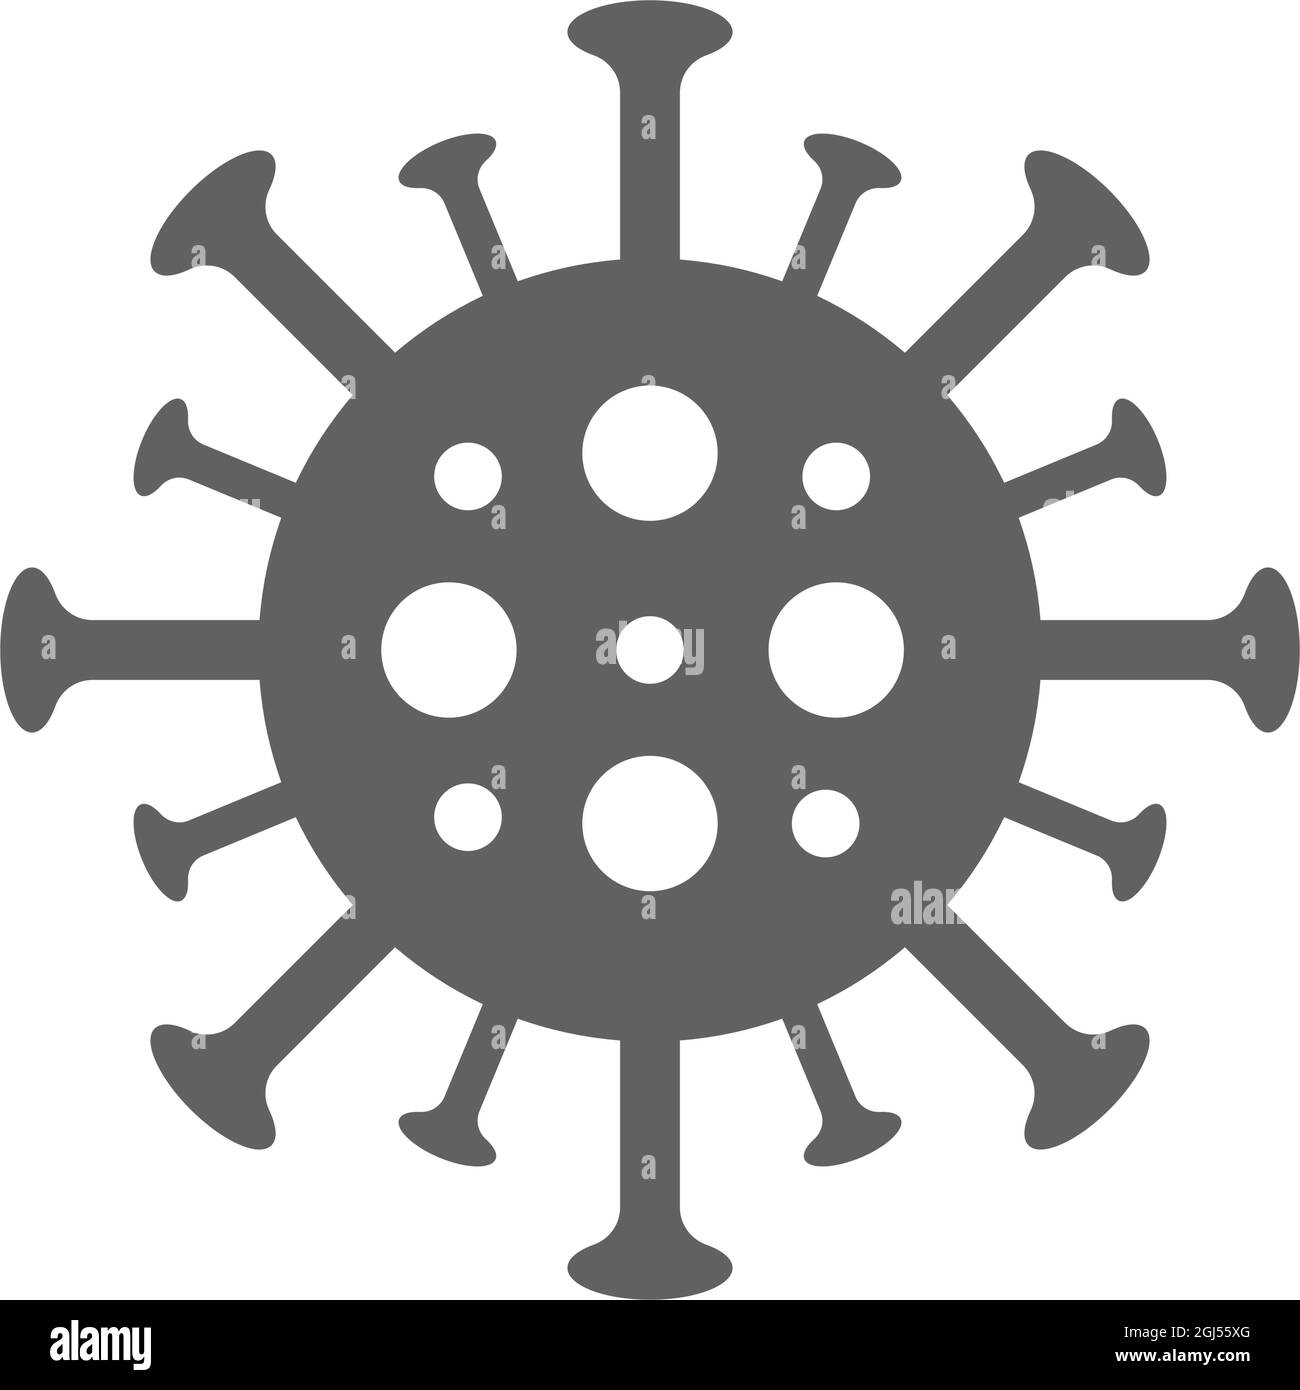 Coronavirus, Covid-Symbol - Vektor-EPS-Datei. Ideal für Printmedien, Web, Stock-Bilder, kommerzielle Nutzung oder jede Art von Design-Projekt. Stock Vektor